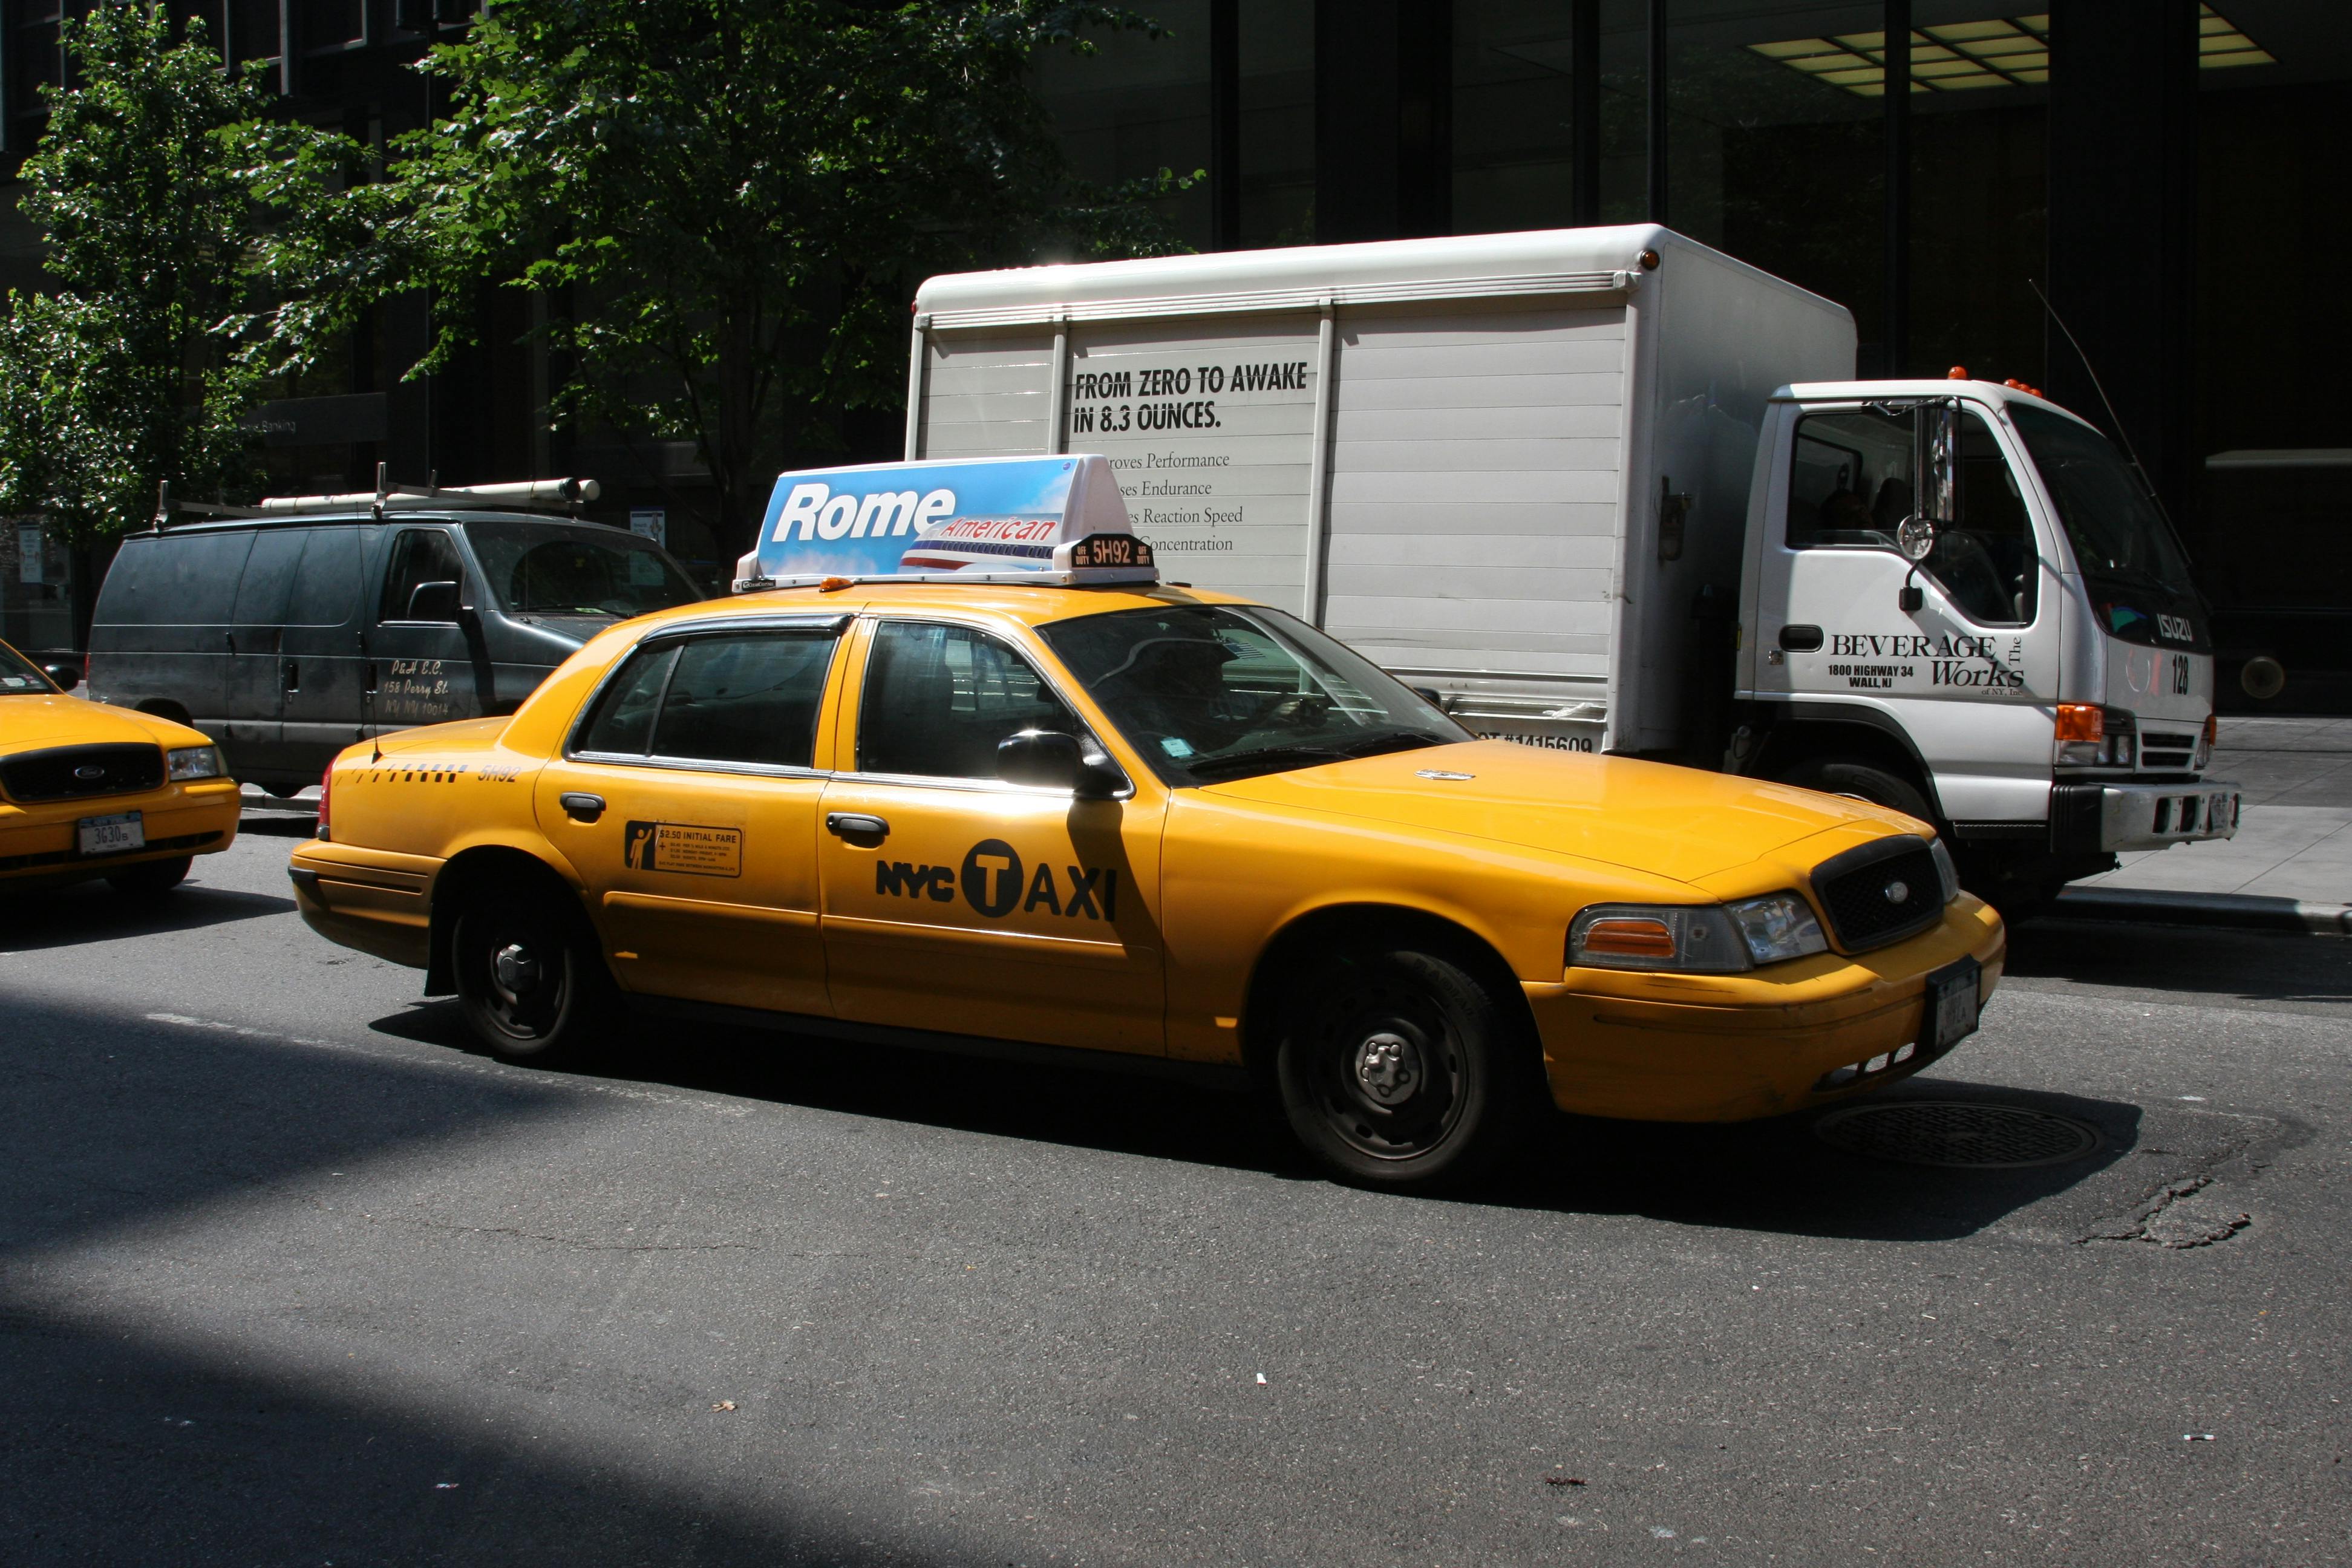 cab travel thorne